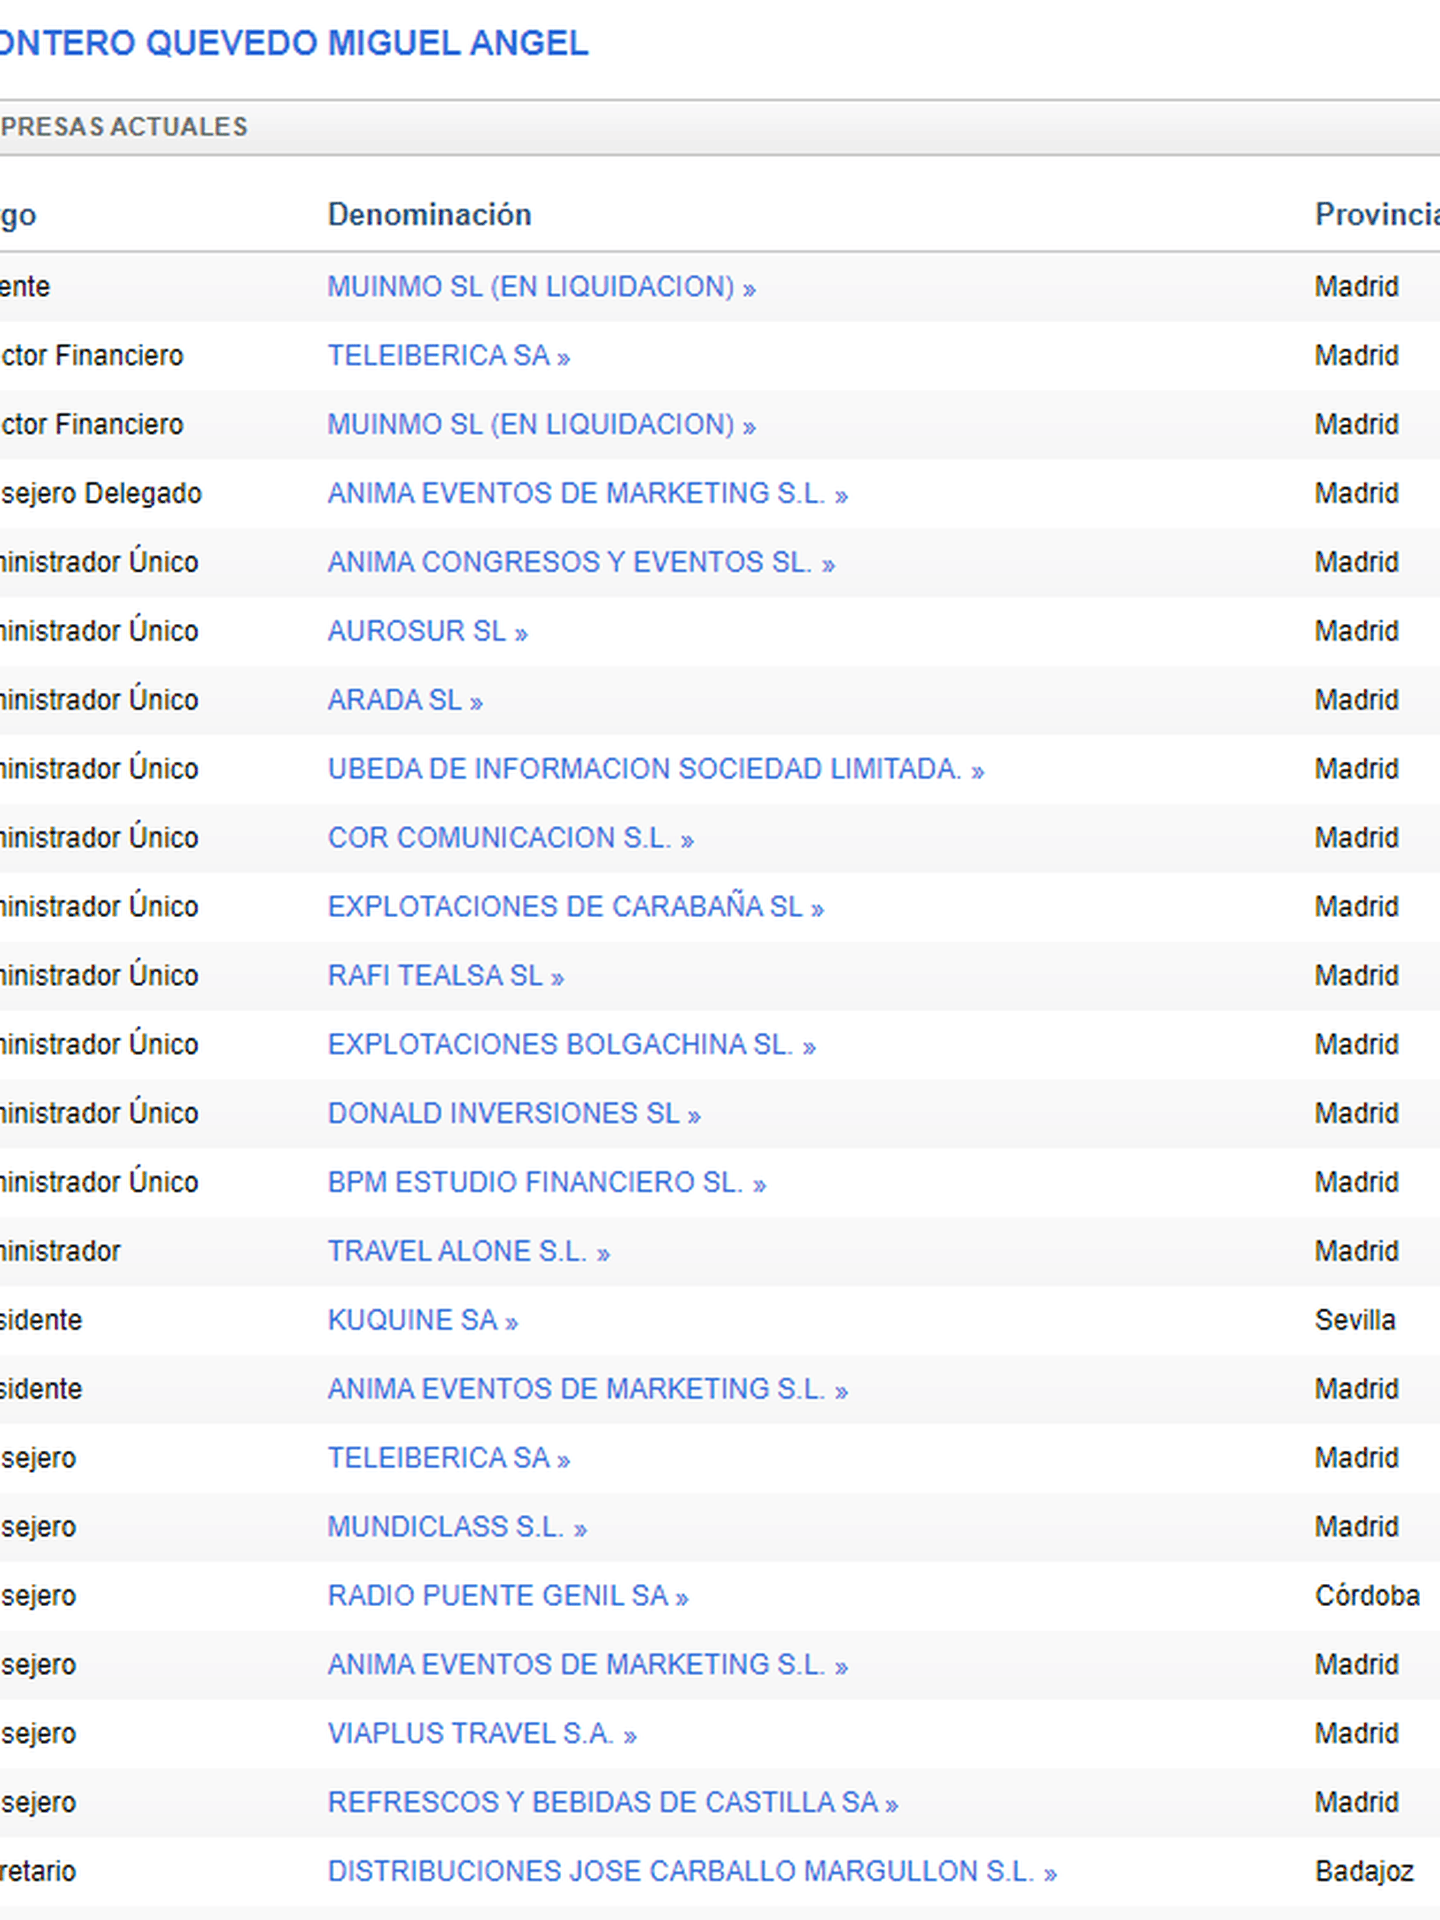 Lista de los principales cargos que ocupa Montero Quevedo en decenas de mercantiles (Informa). (Pinche para ampliar)